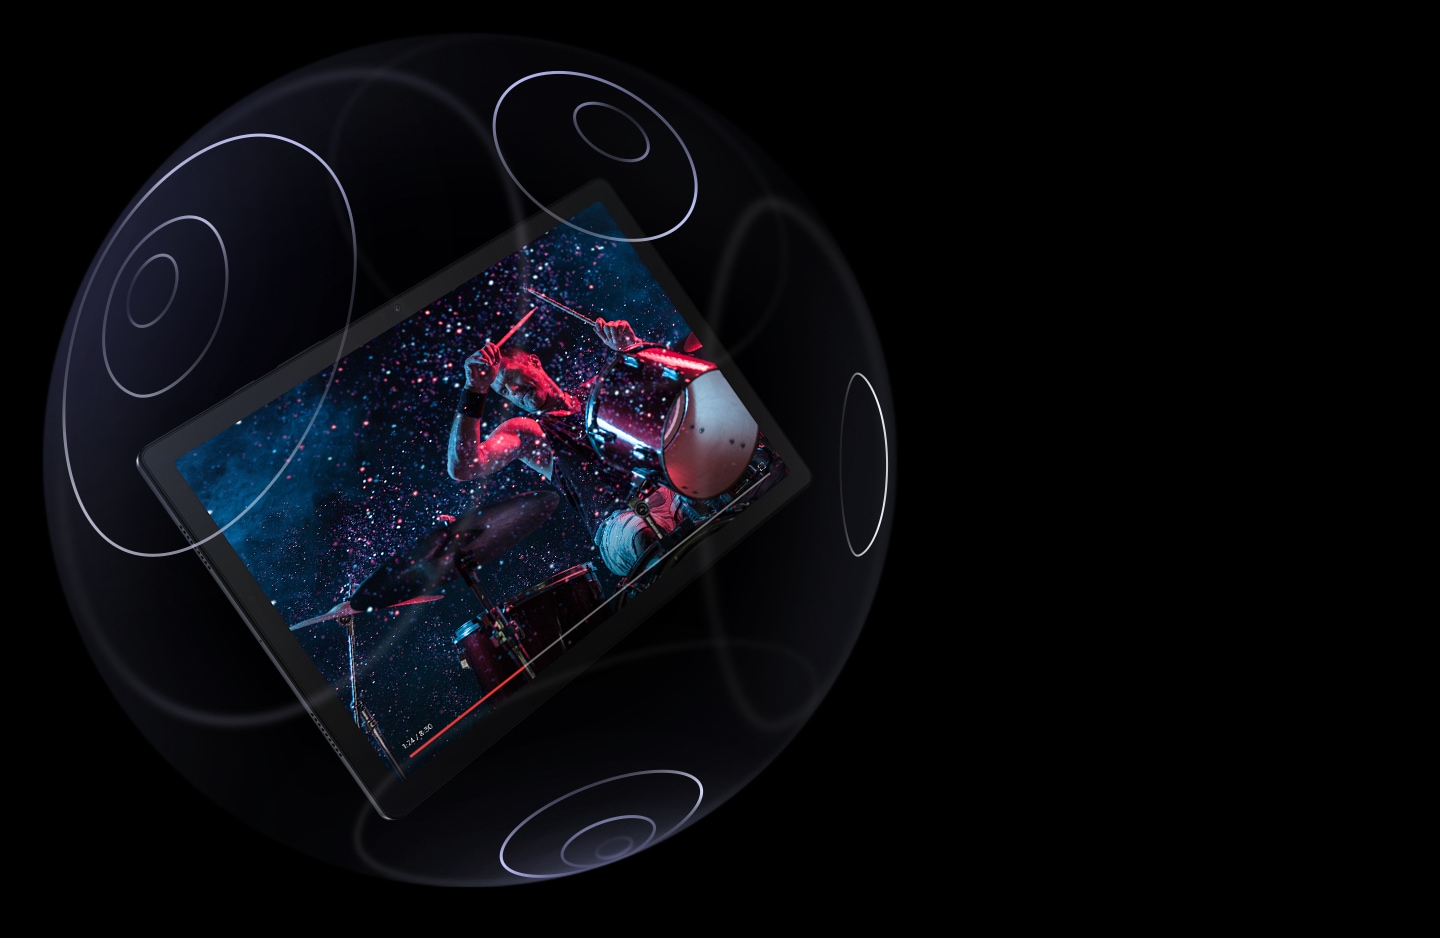 Immagine di un Galaxy Tab A8 che fluttua all’interno di una sfera trasparente con cerchi concentrici sulla sua superficie. Lo schermo mostra un uomo che suona la batteria, con una barra di avanzamento in basso.